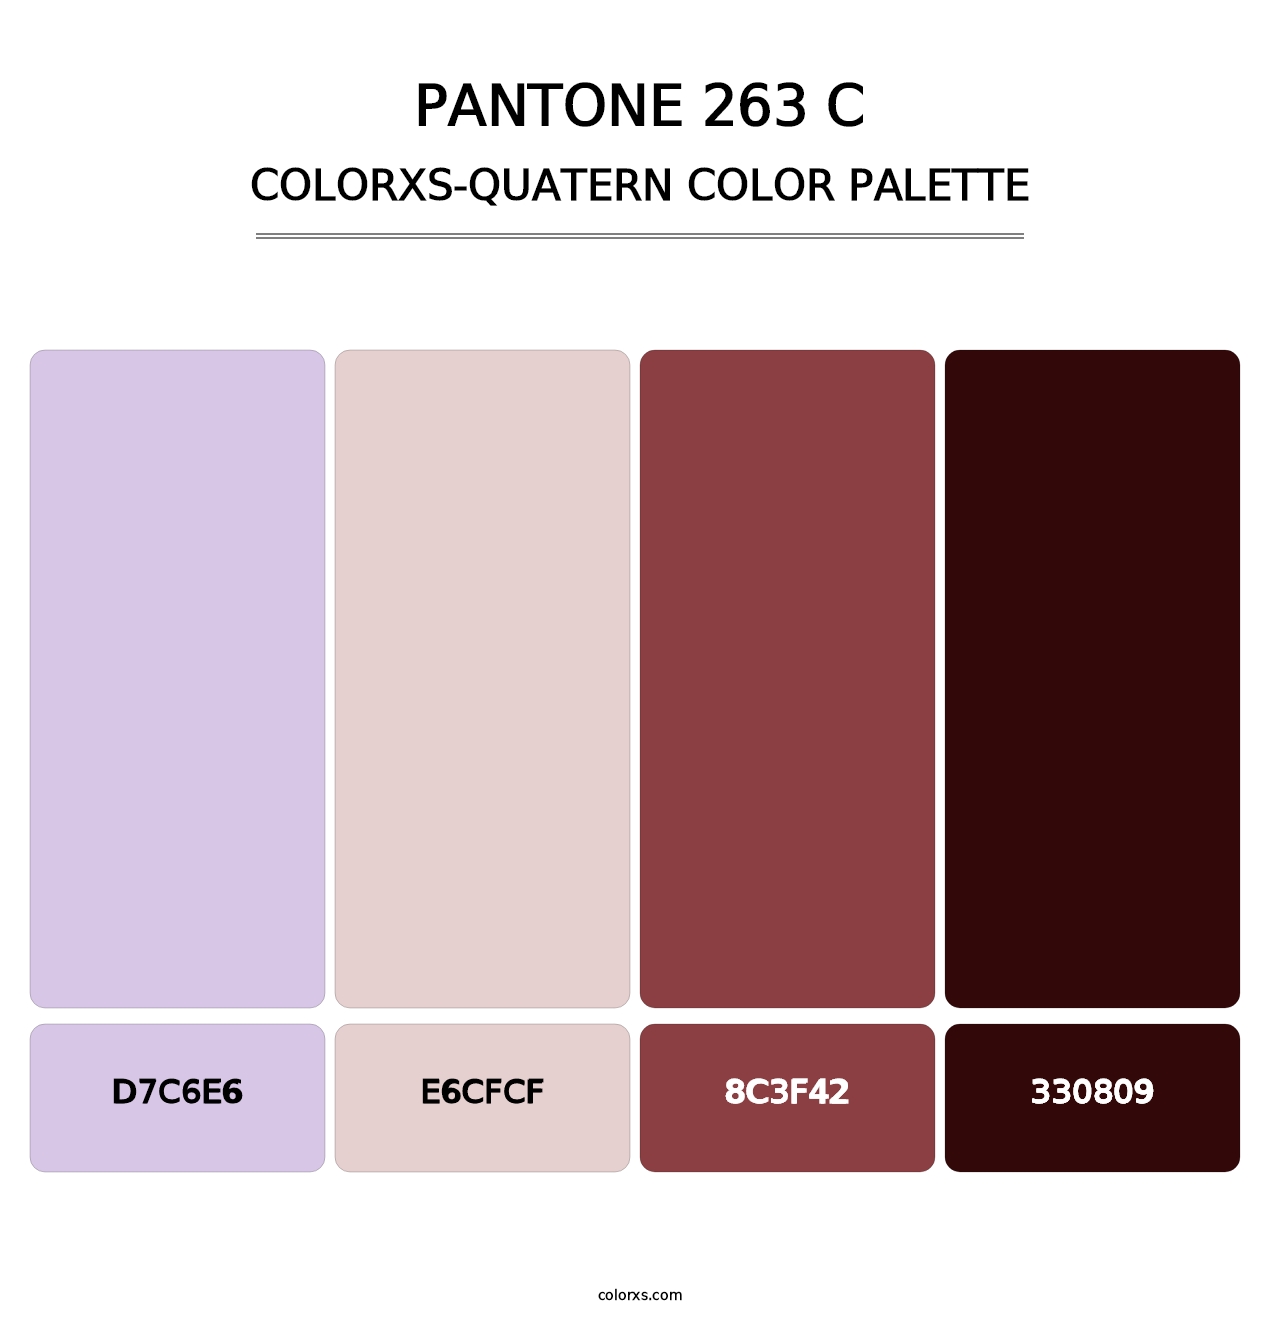 PANTONE 263 C - Colorxs Quatern Palette